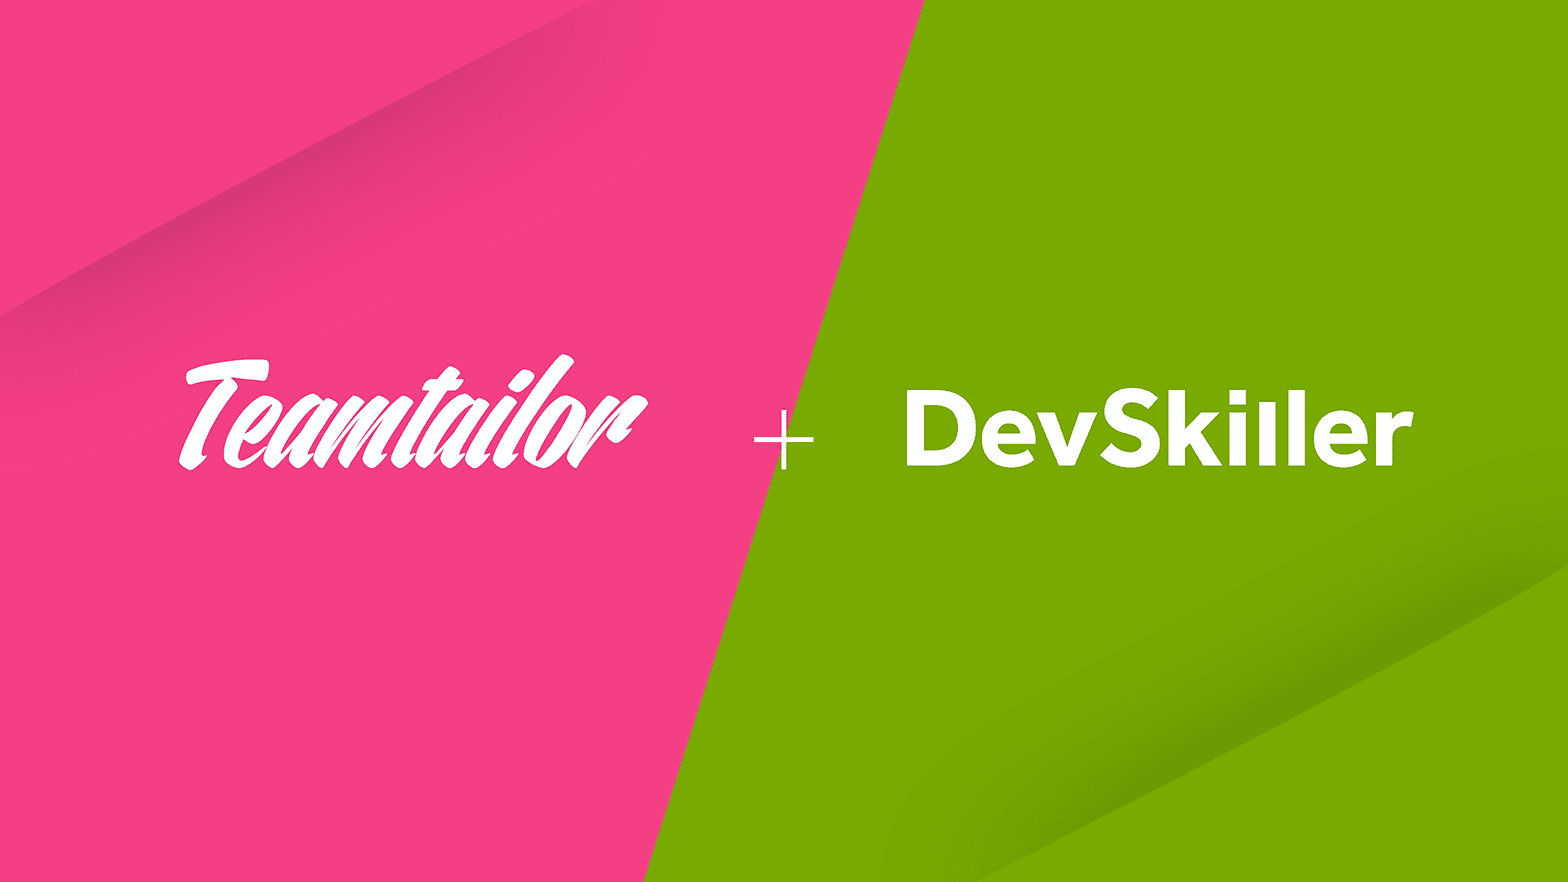 Teamtailor x DevSkiller integratie